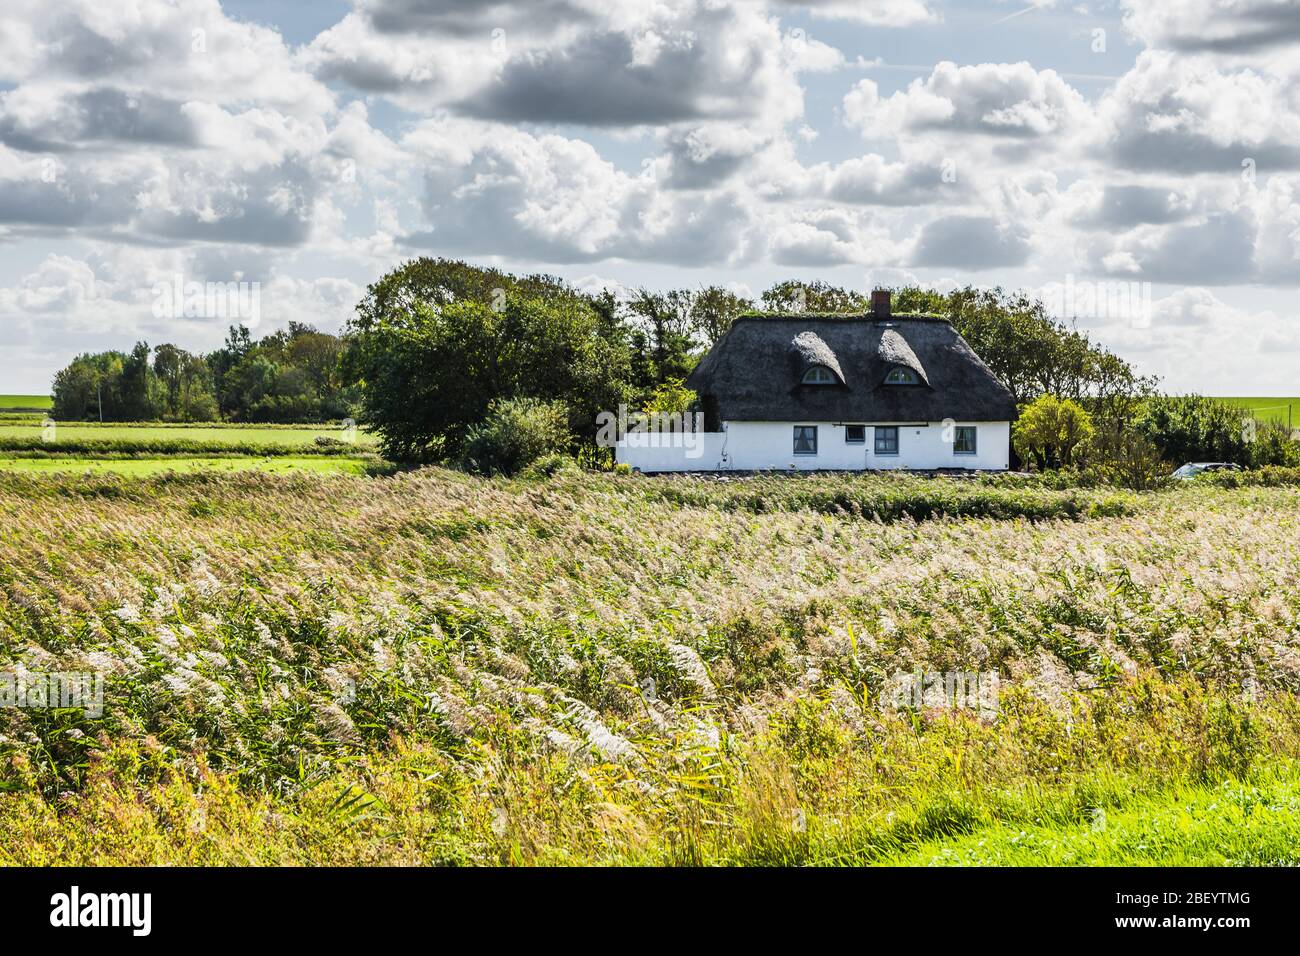 Bauernhaus in grüner ländlicher Landschaft auf Nordstrand Halbinsel, Nordfriesland, Deutschland Stockfoto